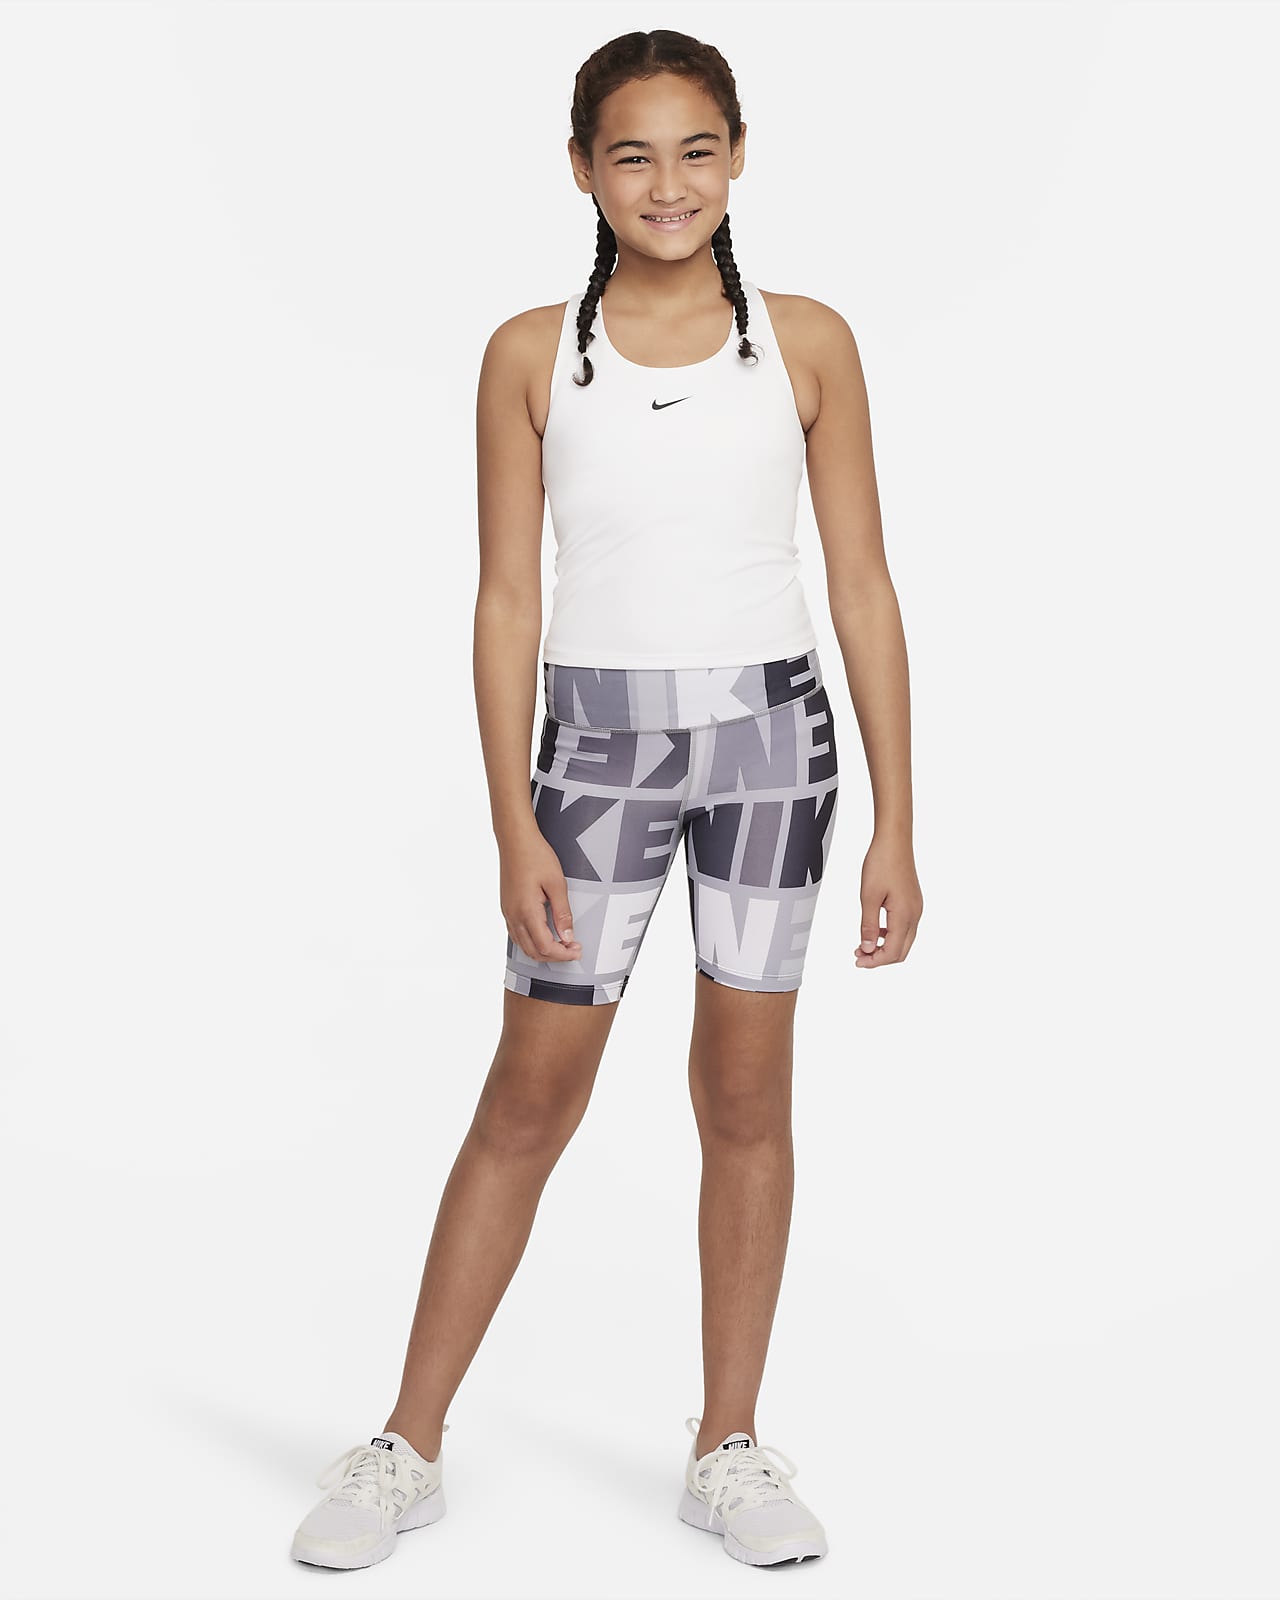 Nike Dri-FIT One Shorts. Big (Girls\') Kids\' Biker